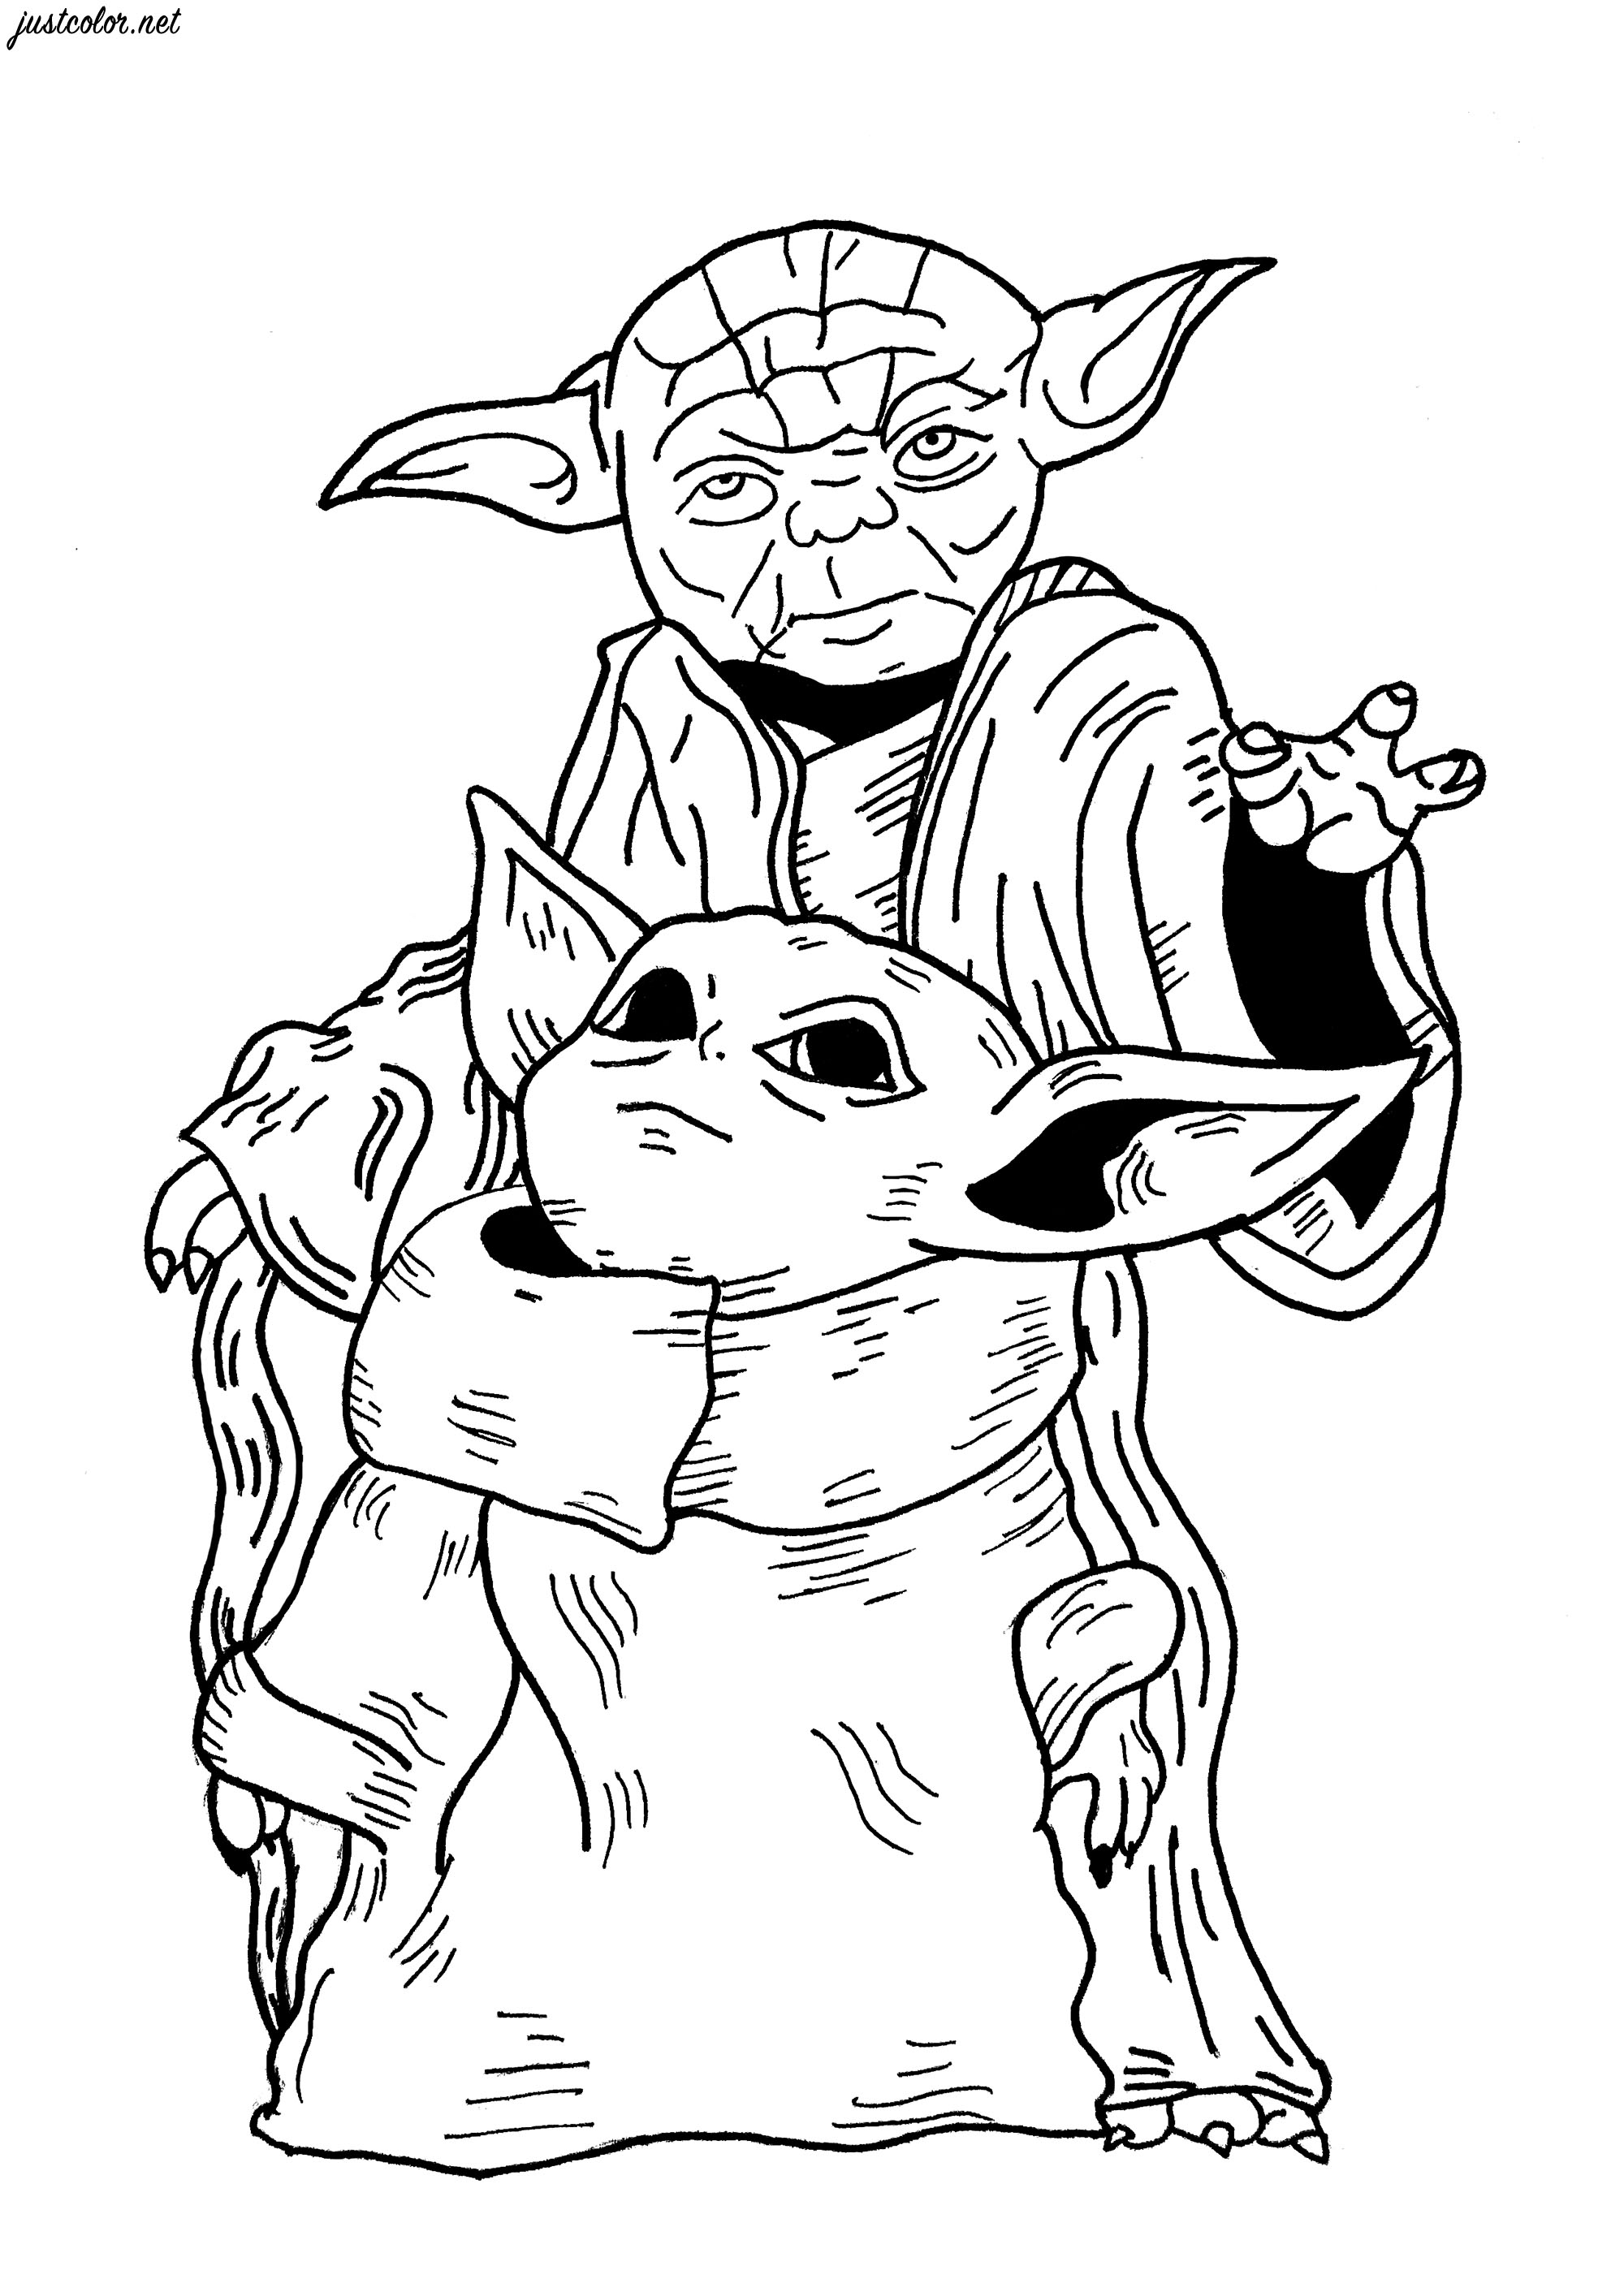 Uma página para colorir original inspirada nas personagens de Grogu (série Star Wars The Mandalorian) e Mestre Yoda.